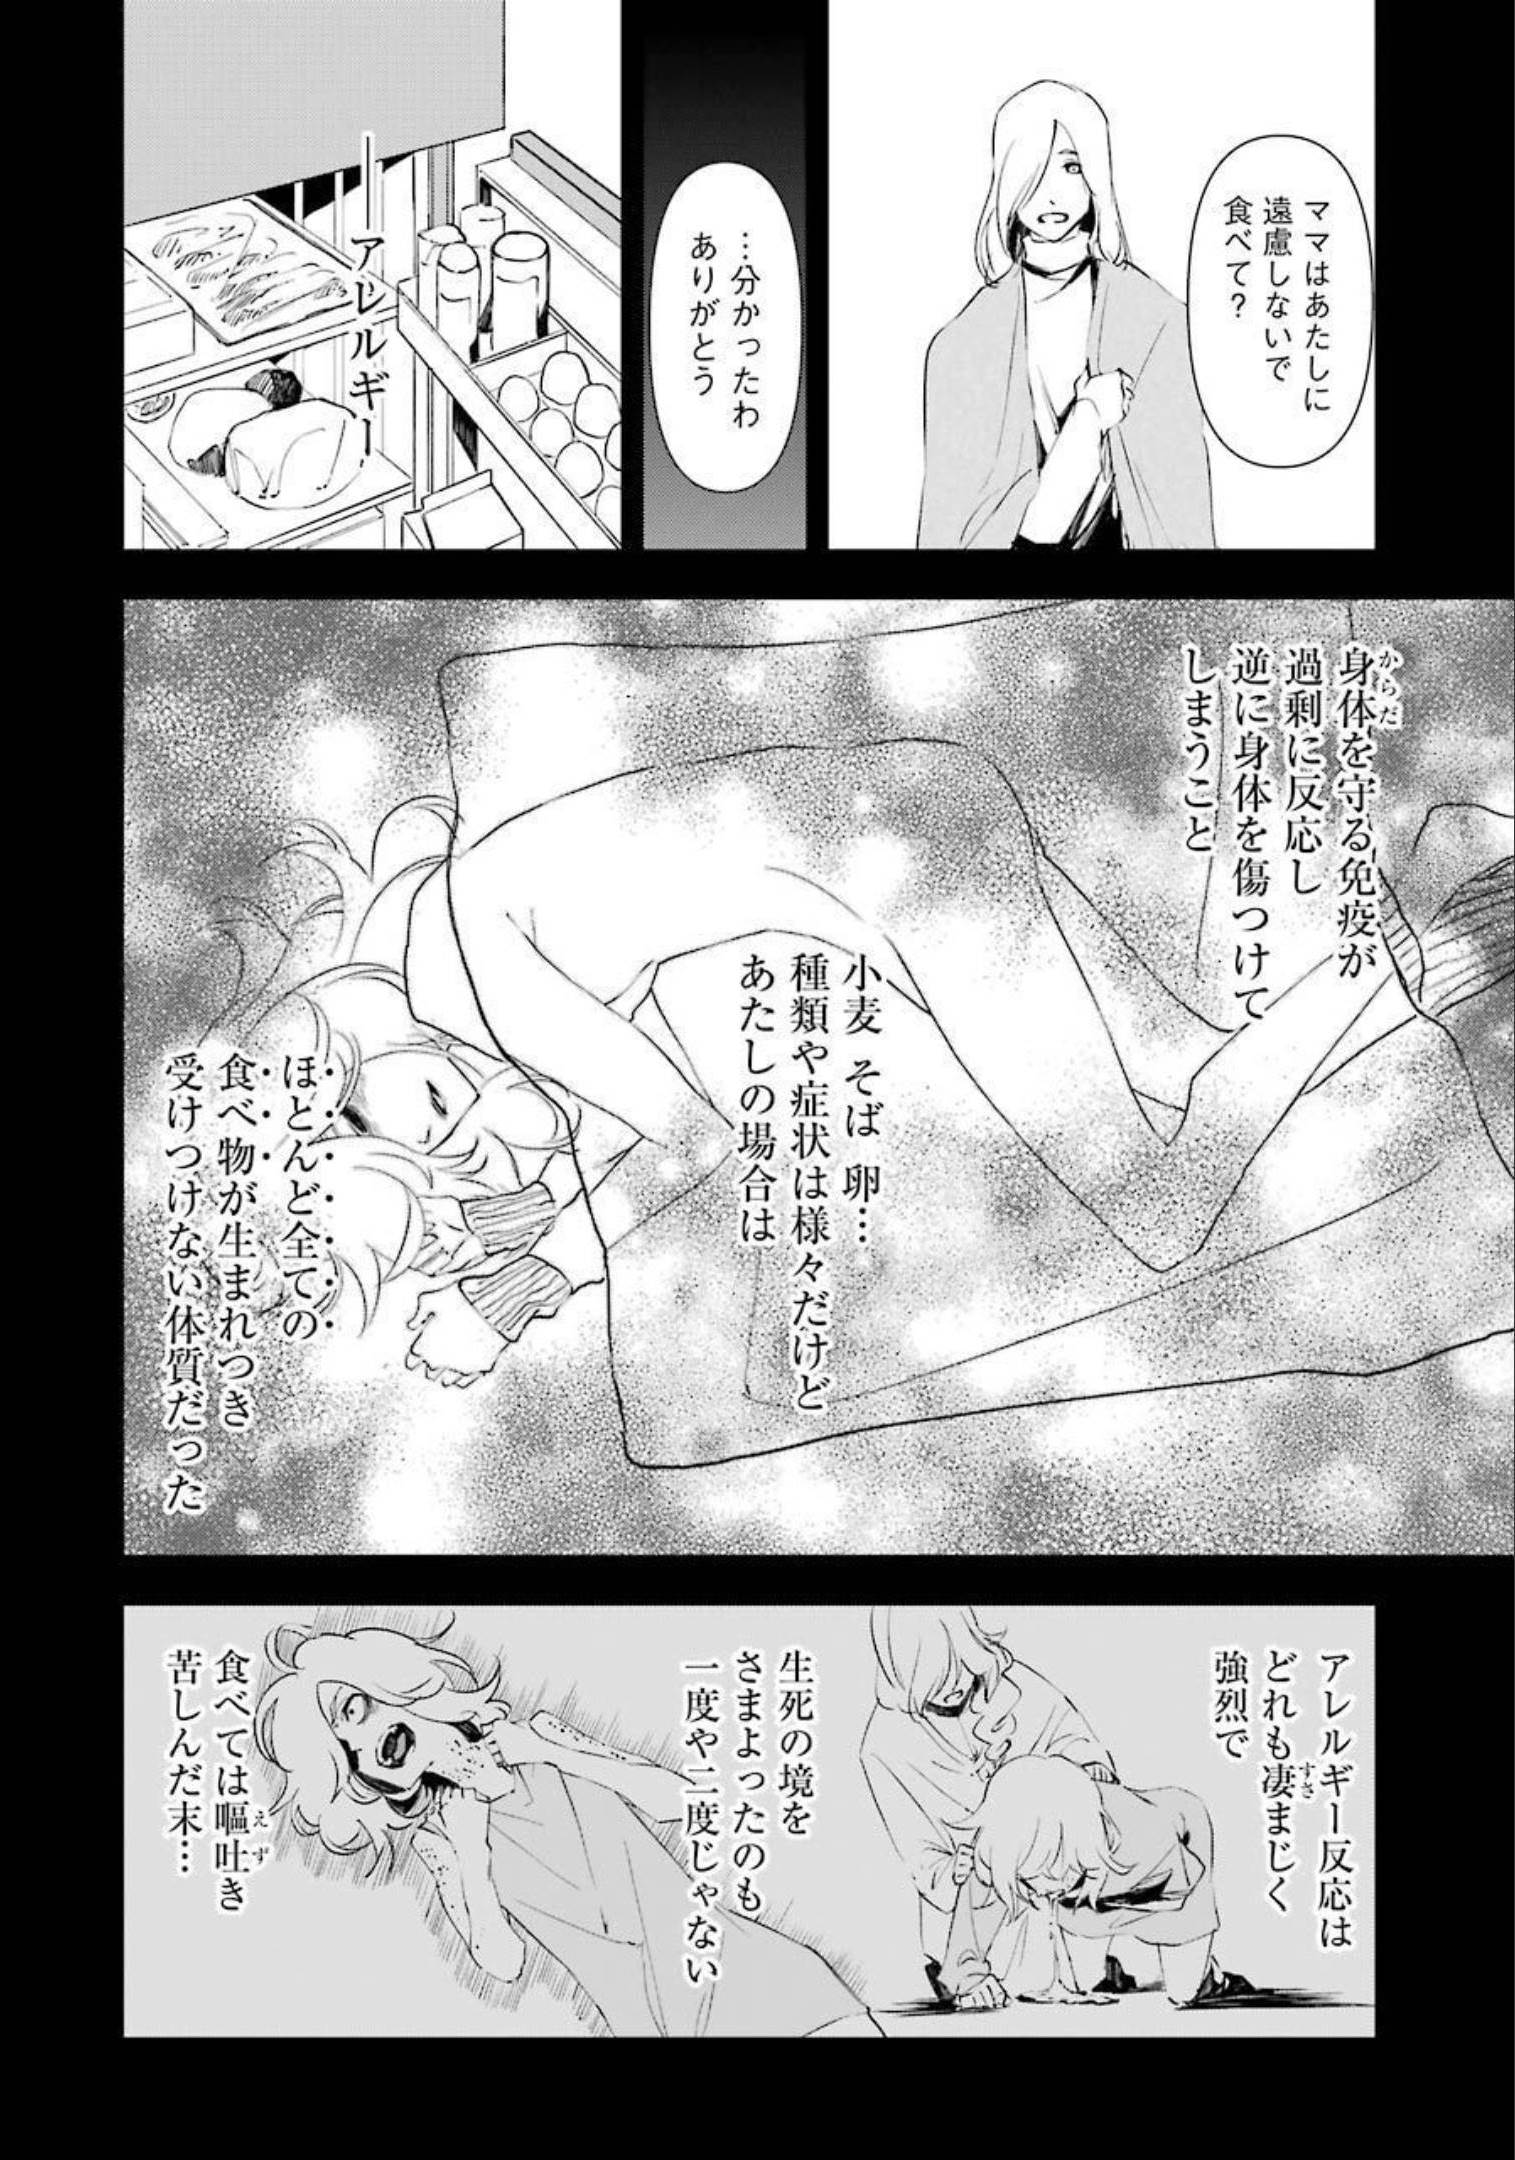 マーダーロック-殺人鬼の凶室-; Mādārokku – satsujinki no kyō-shitsu -; Murder Rock-The Murderer’s Chamber- 第16話 - Page 4